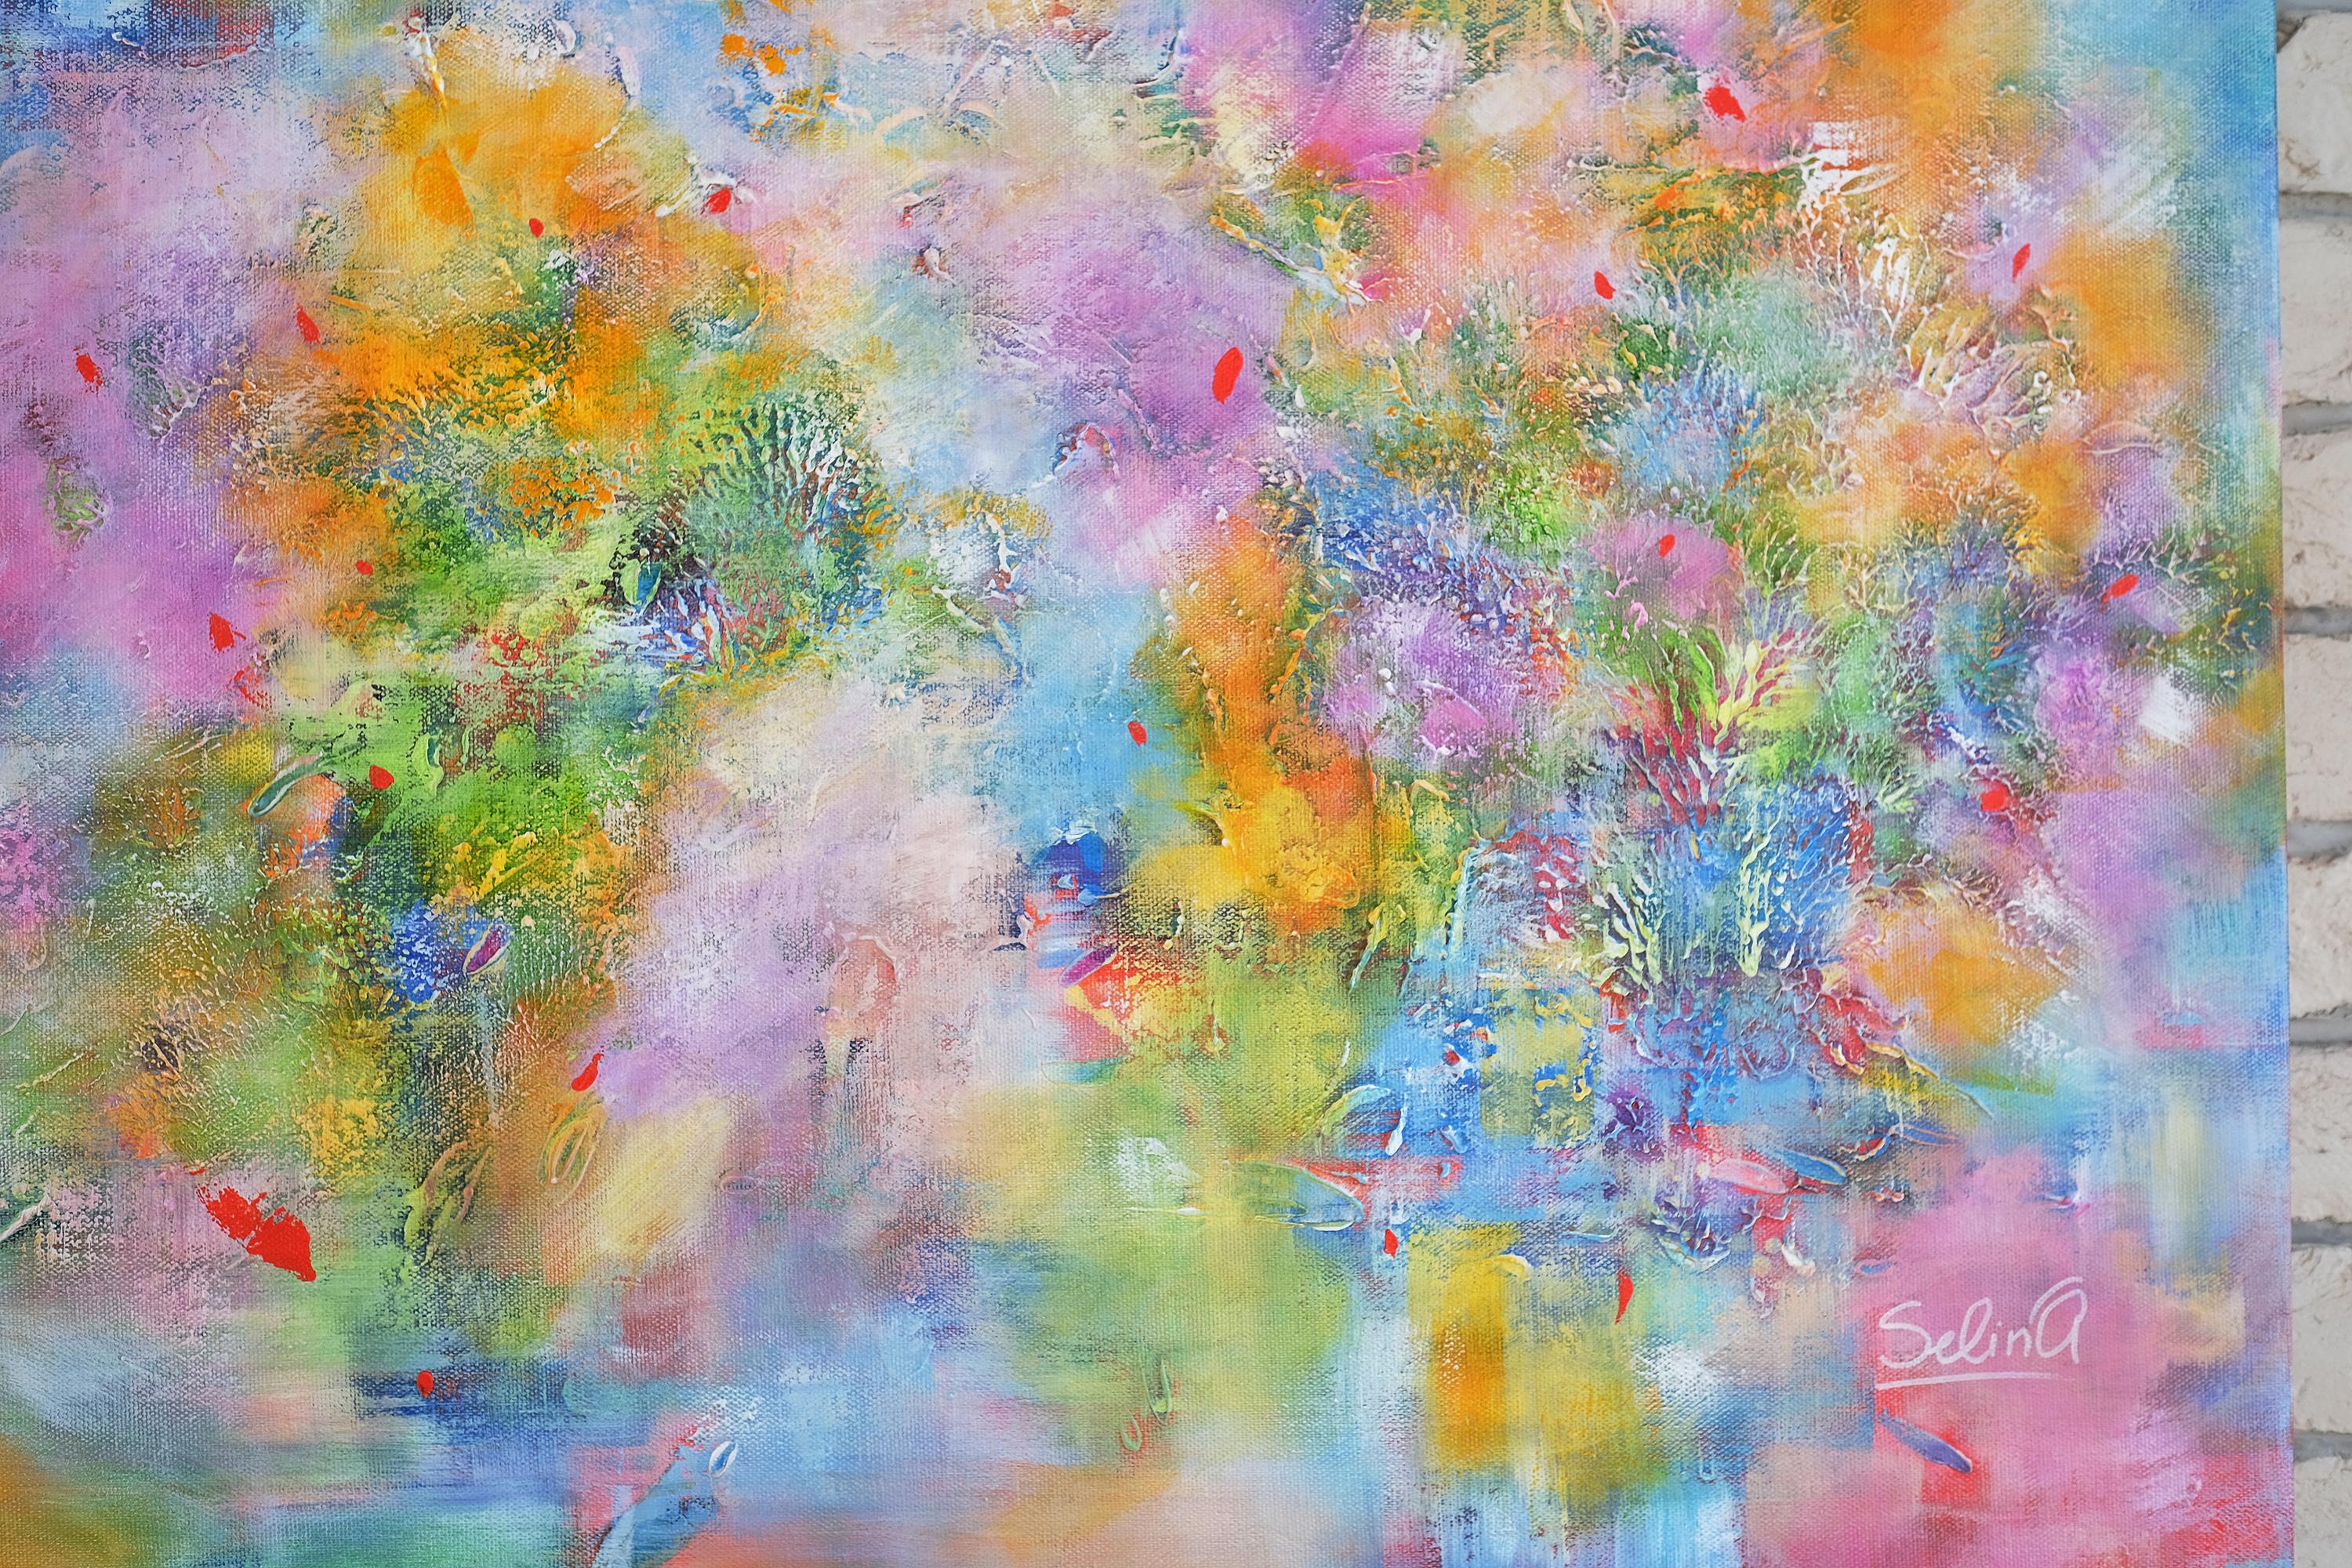 La lumière, peinture abstraite colorée moderne 100x100cm d'Anna Selina en vente 2